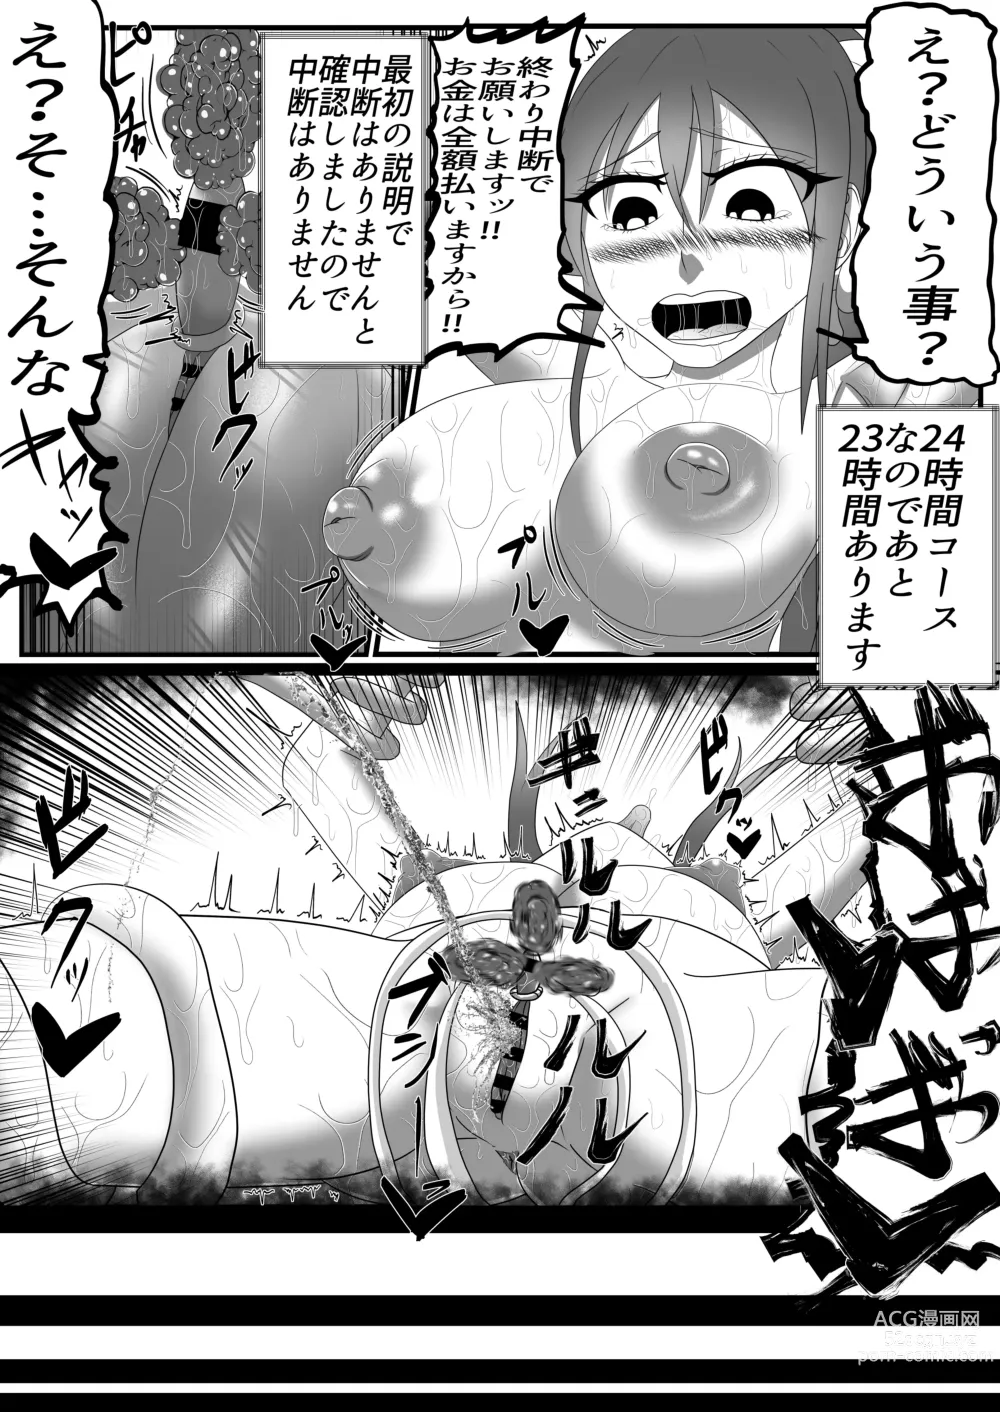 Page 24 of doujinshi Houkei Clitoris Chiryou Senmonten -24-jikan Cli Seme Course-